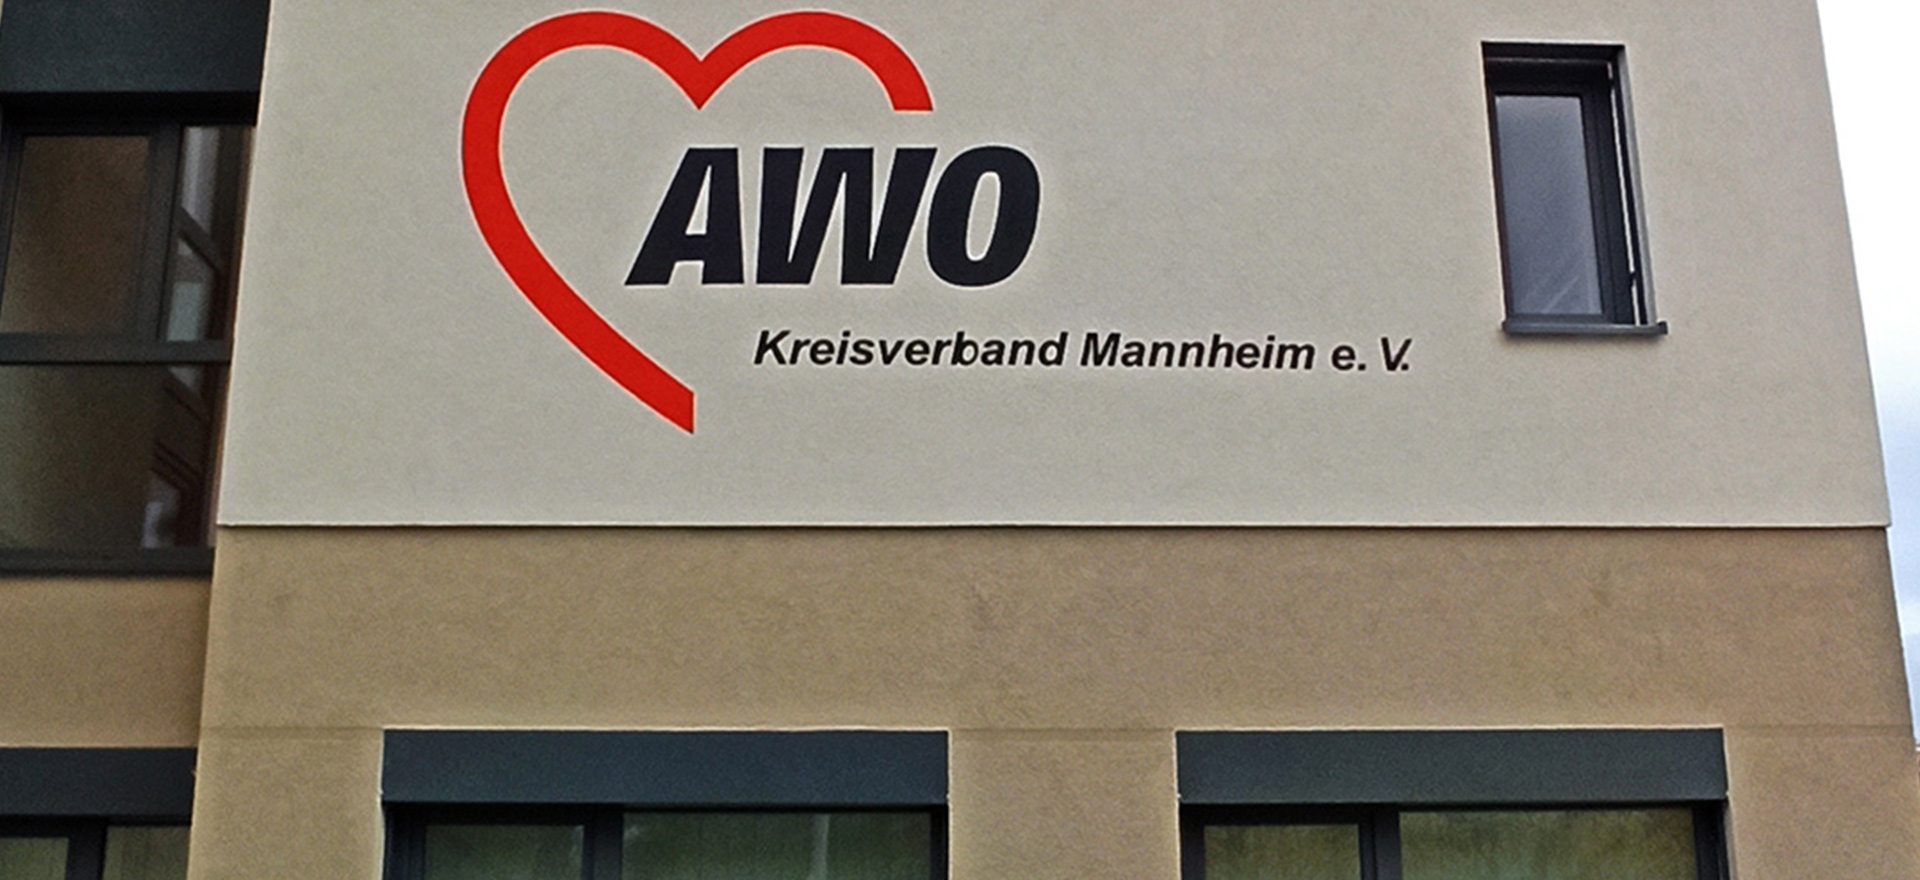 awo-fritz-esser-haus-mannheim-tischer-gastro-heidelberg-aussenansicht-haus-logo-kreisverband-mannheim-ev